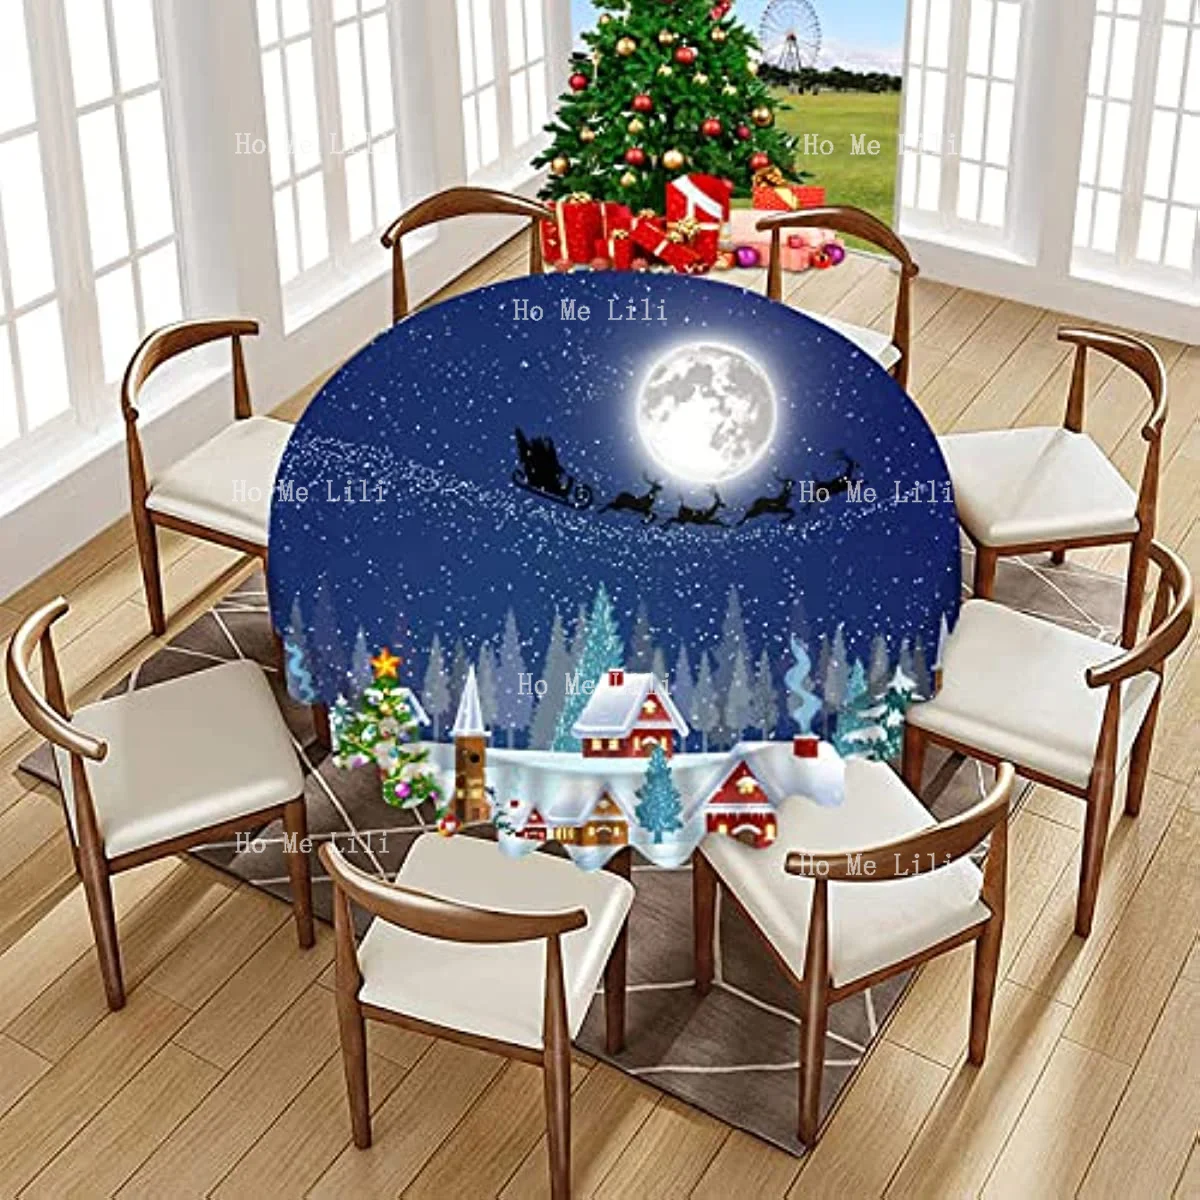 חורף שלג חג המולד סנטה קלאוס במזחלת הירח מתנה שלג כוכבים Holiday מפת שולחן עגול